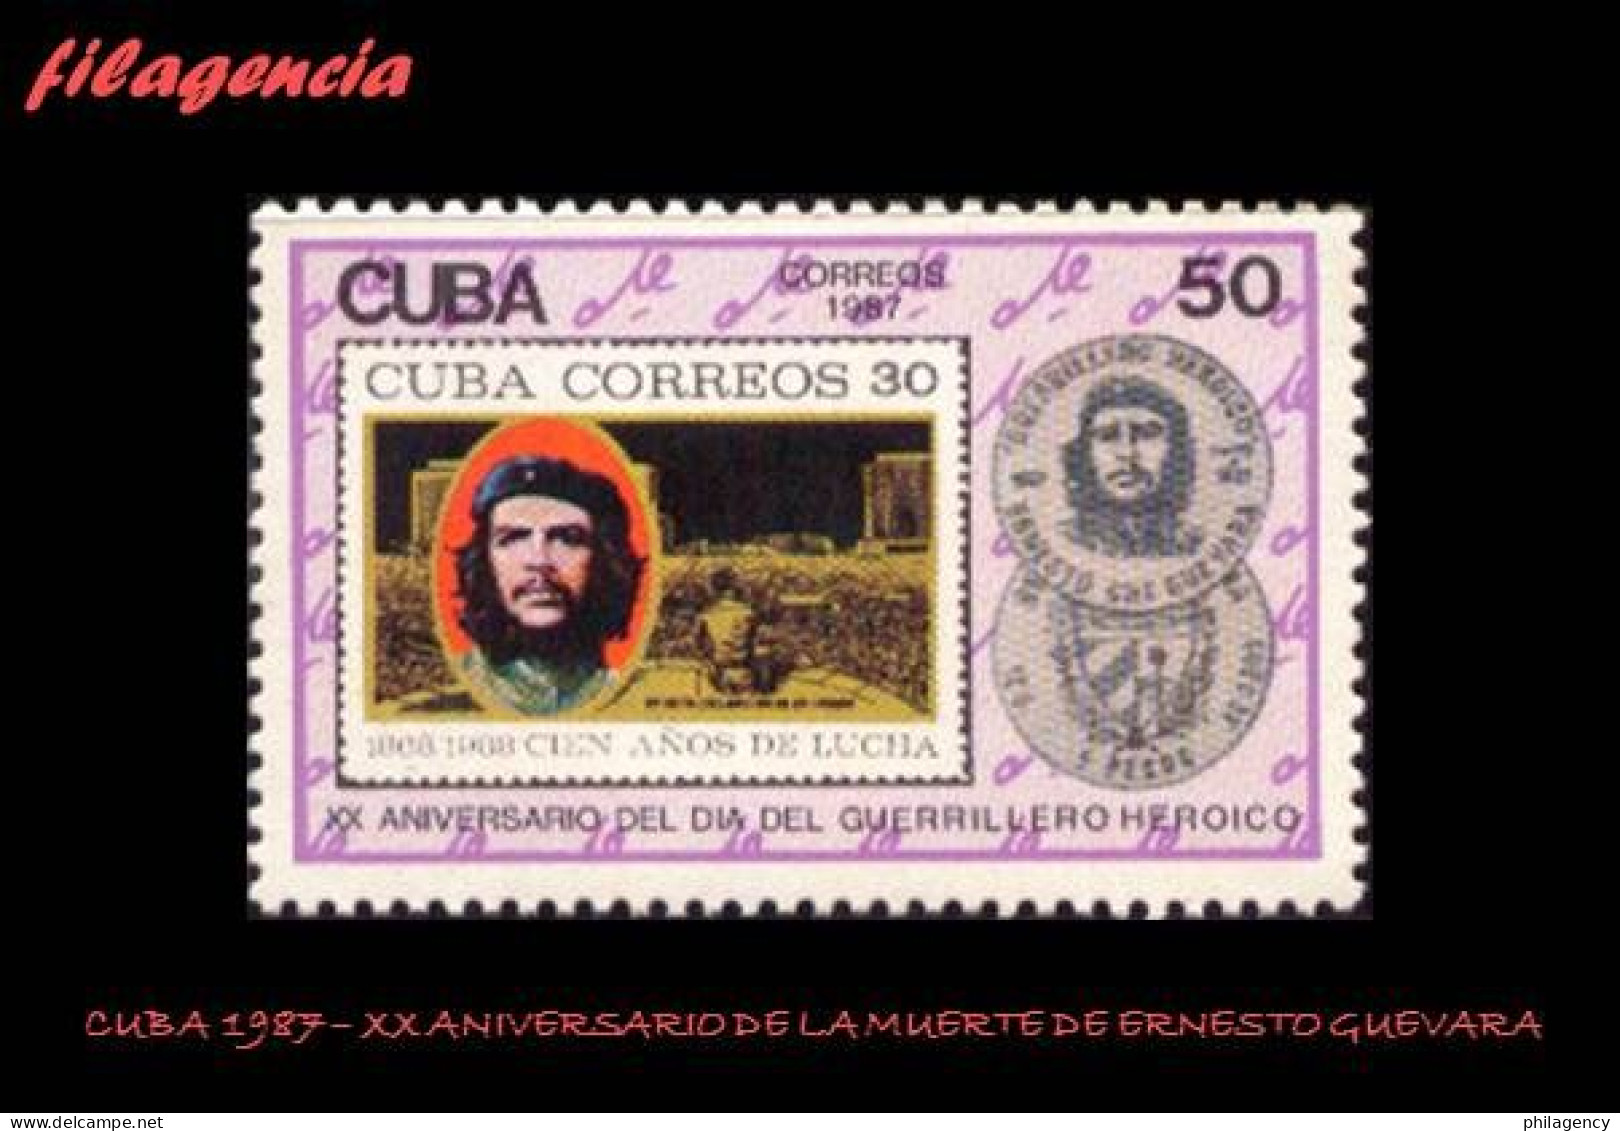 CUBA MINT. 1987-20 XX ANIVERSARIO DE LA MUERTE DE ERNESTO CHE GUEVARA - Nuevos